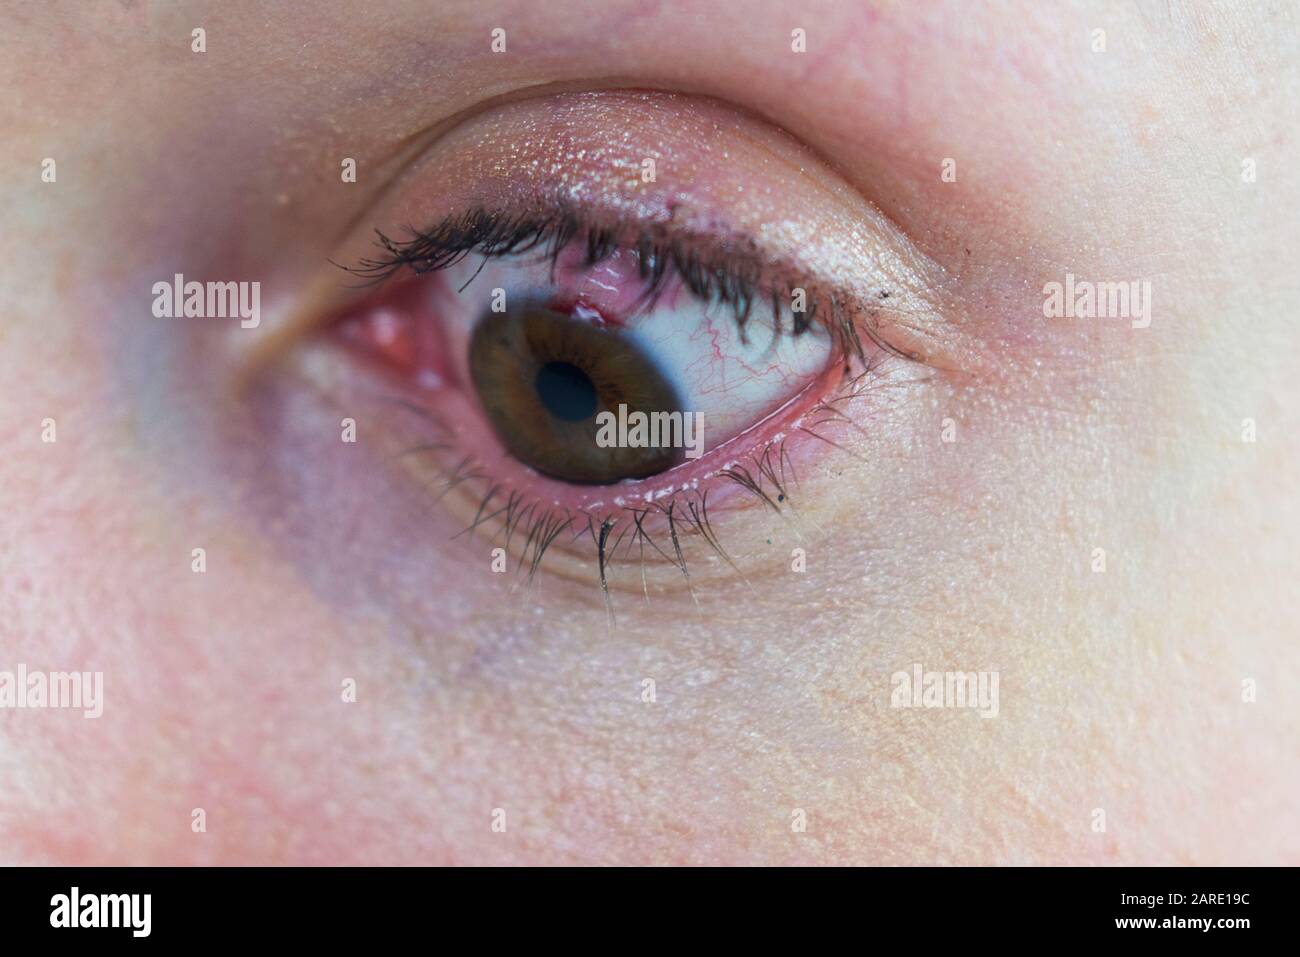 Œil avec une sclérera sanglante de dommages de chirurgie de l'œil laser. Cellules sanguines dans les yeux, sang visiteux. Maquillage portant une femme Banque D'Images